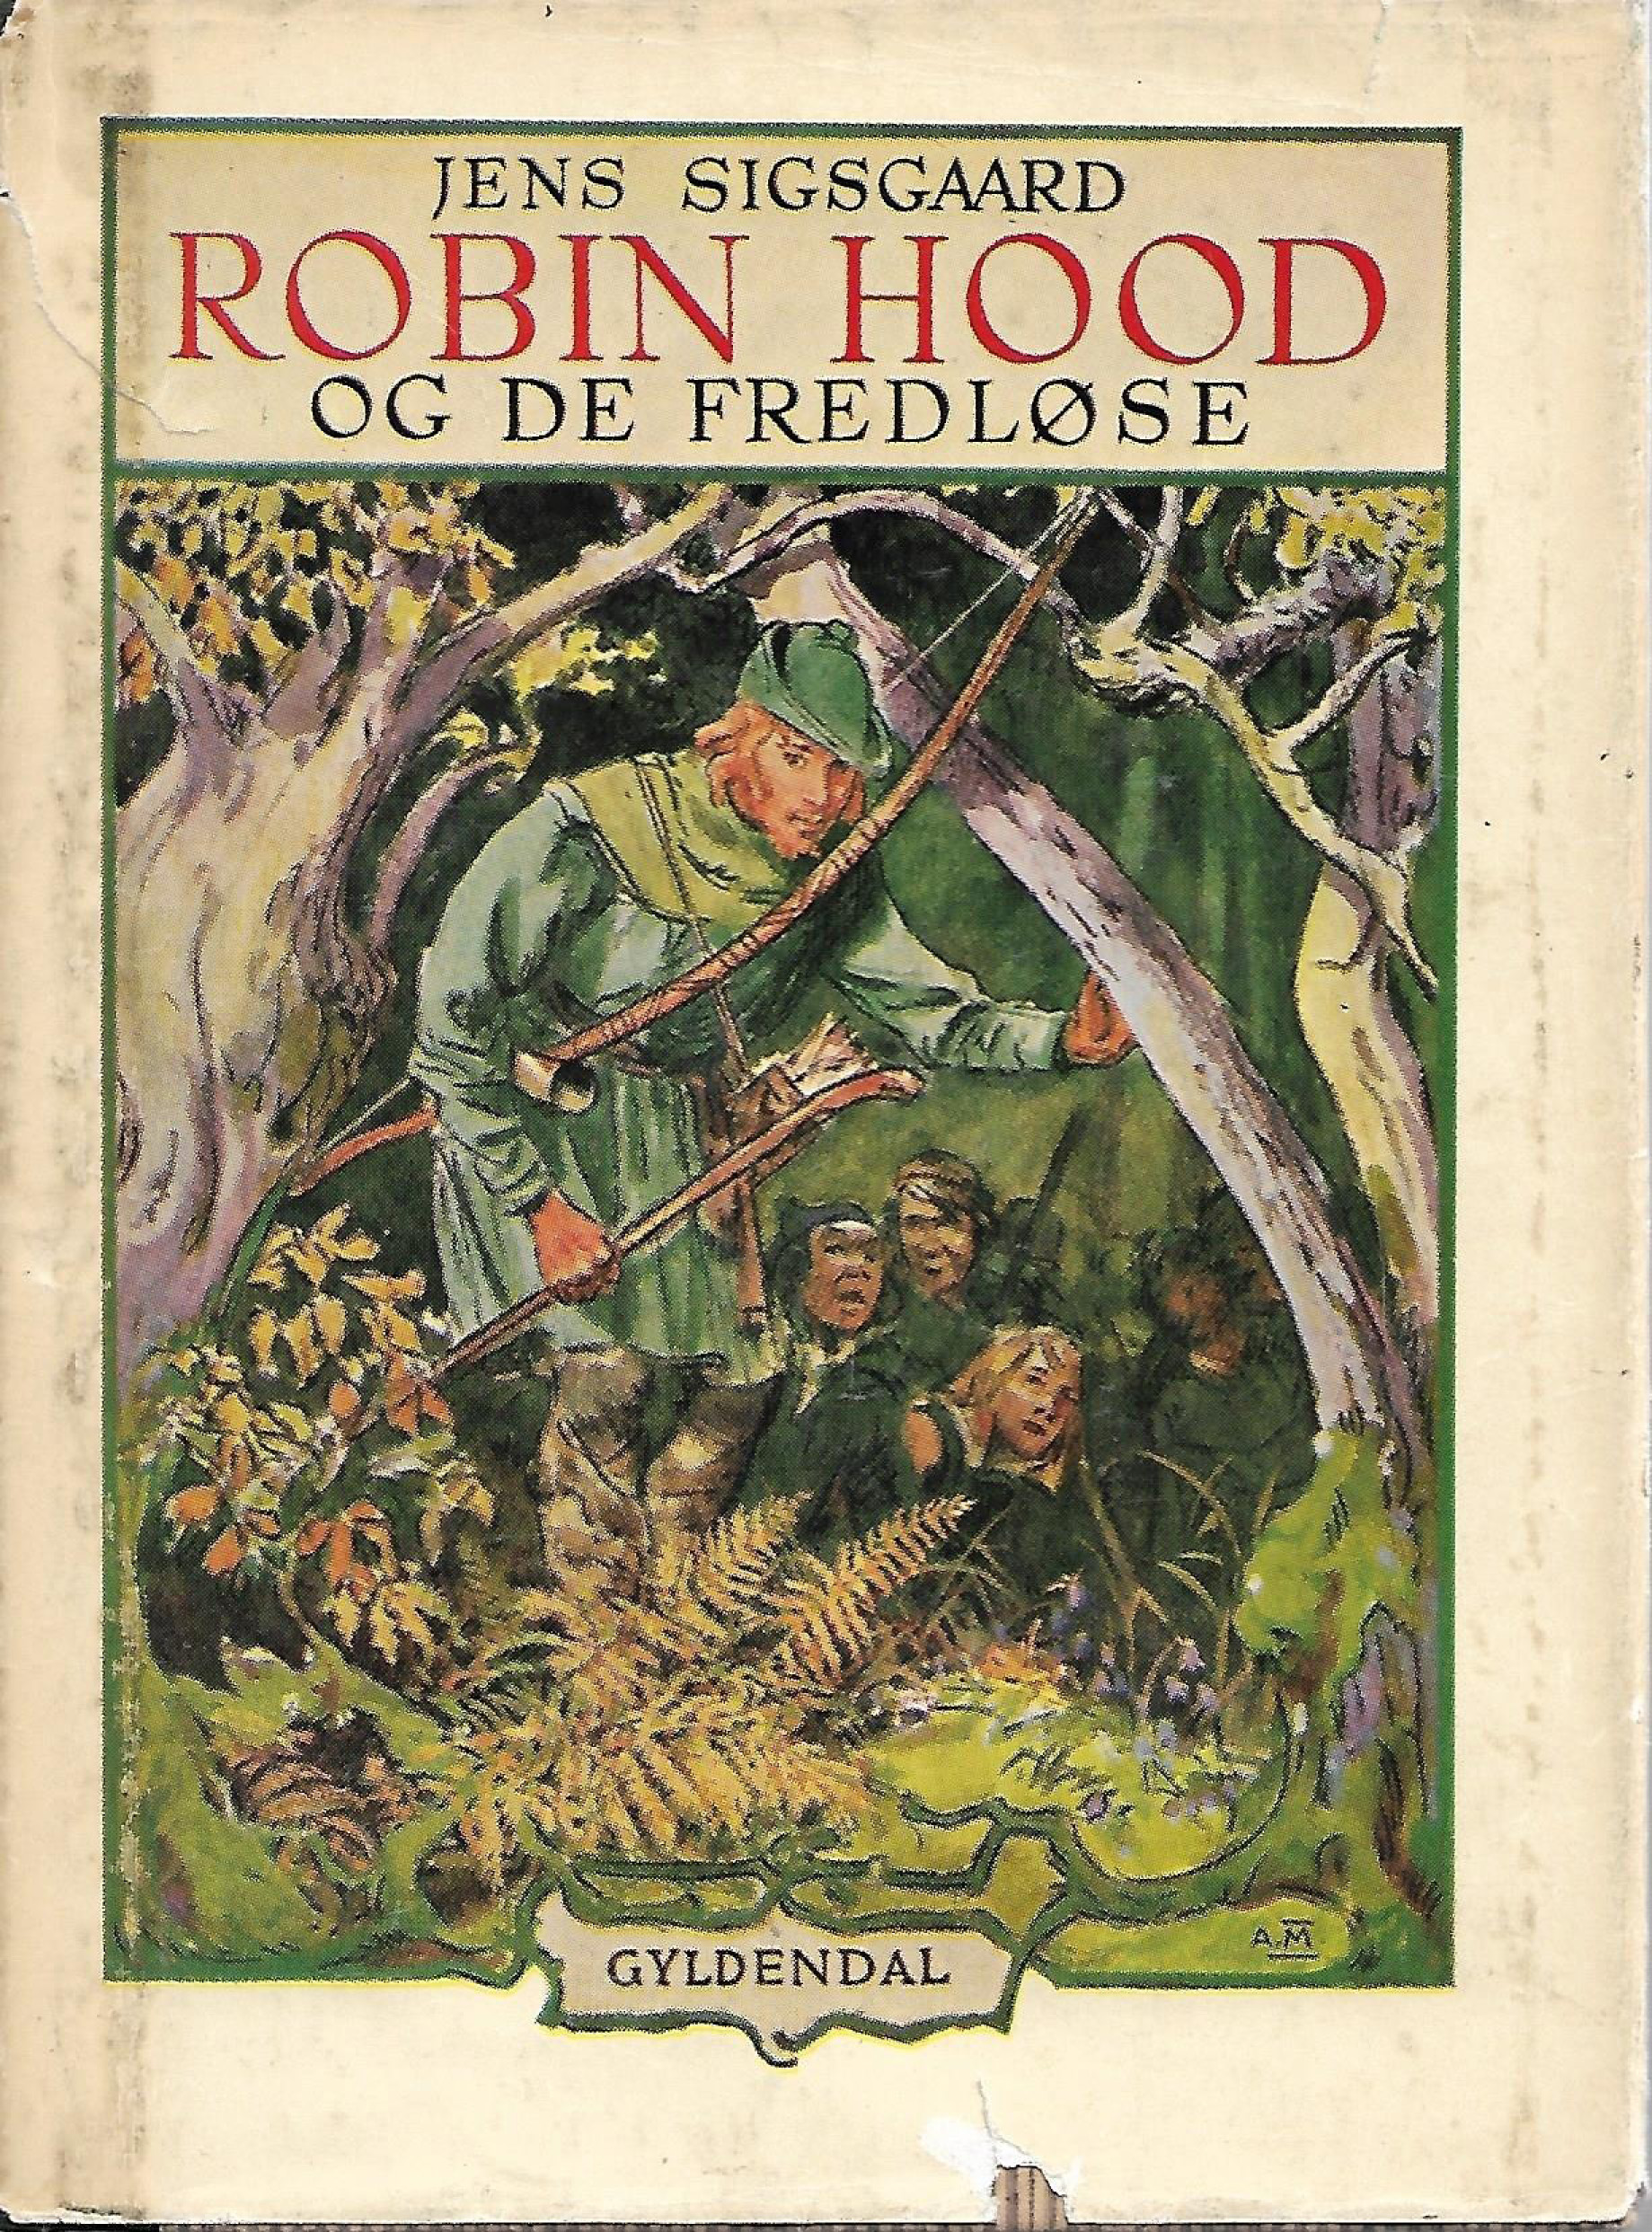 Robin Hood og de fredløse - Jens Sigsgaard - 1952-1